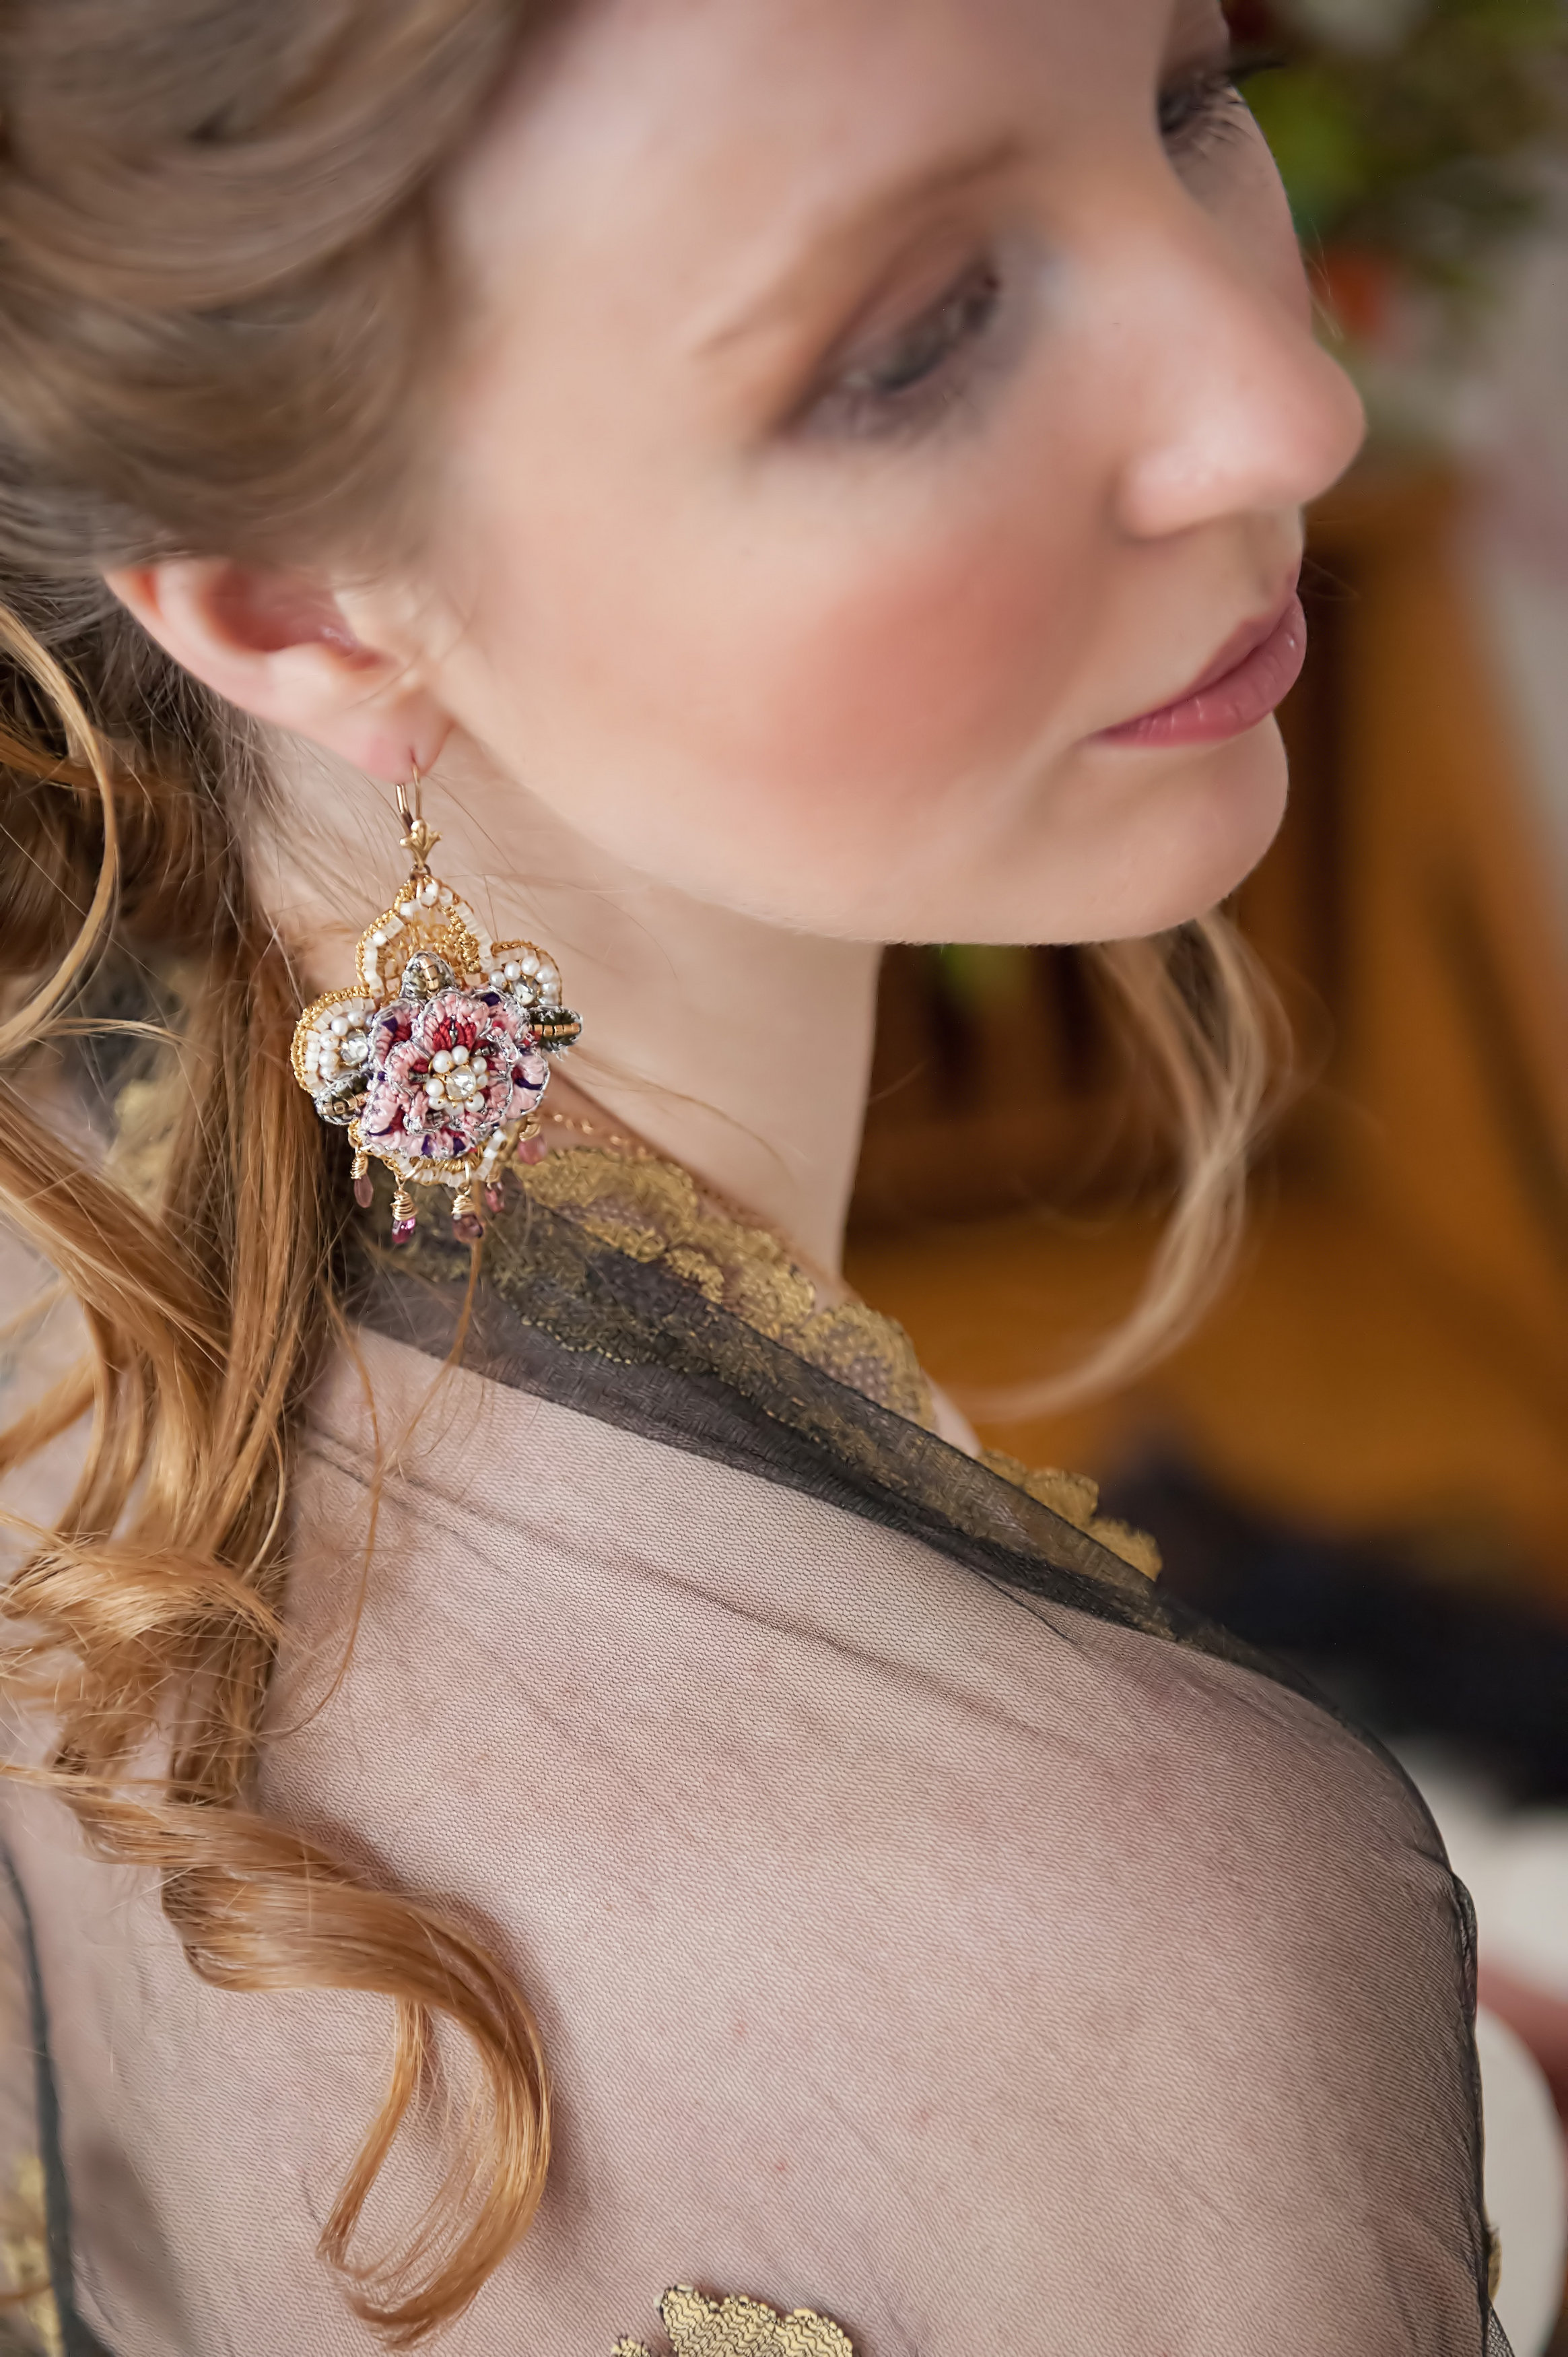   Tudor Rose Earrings  